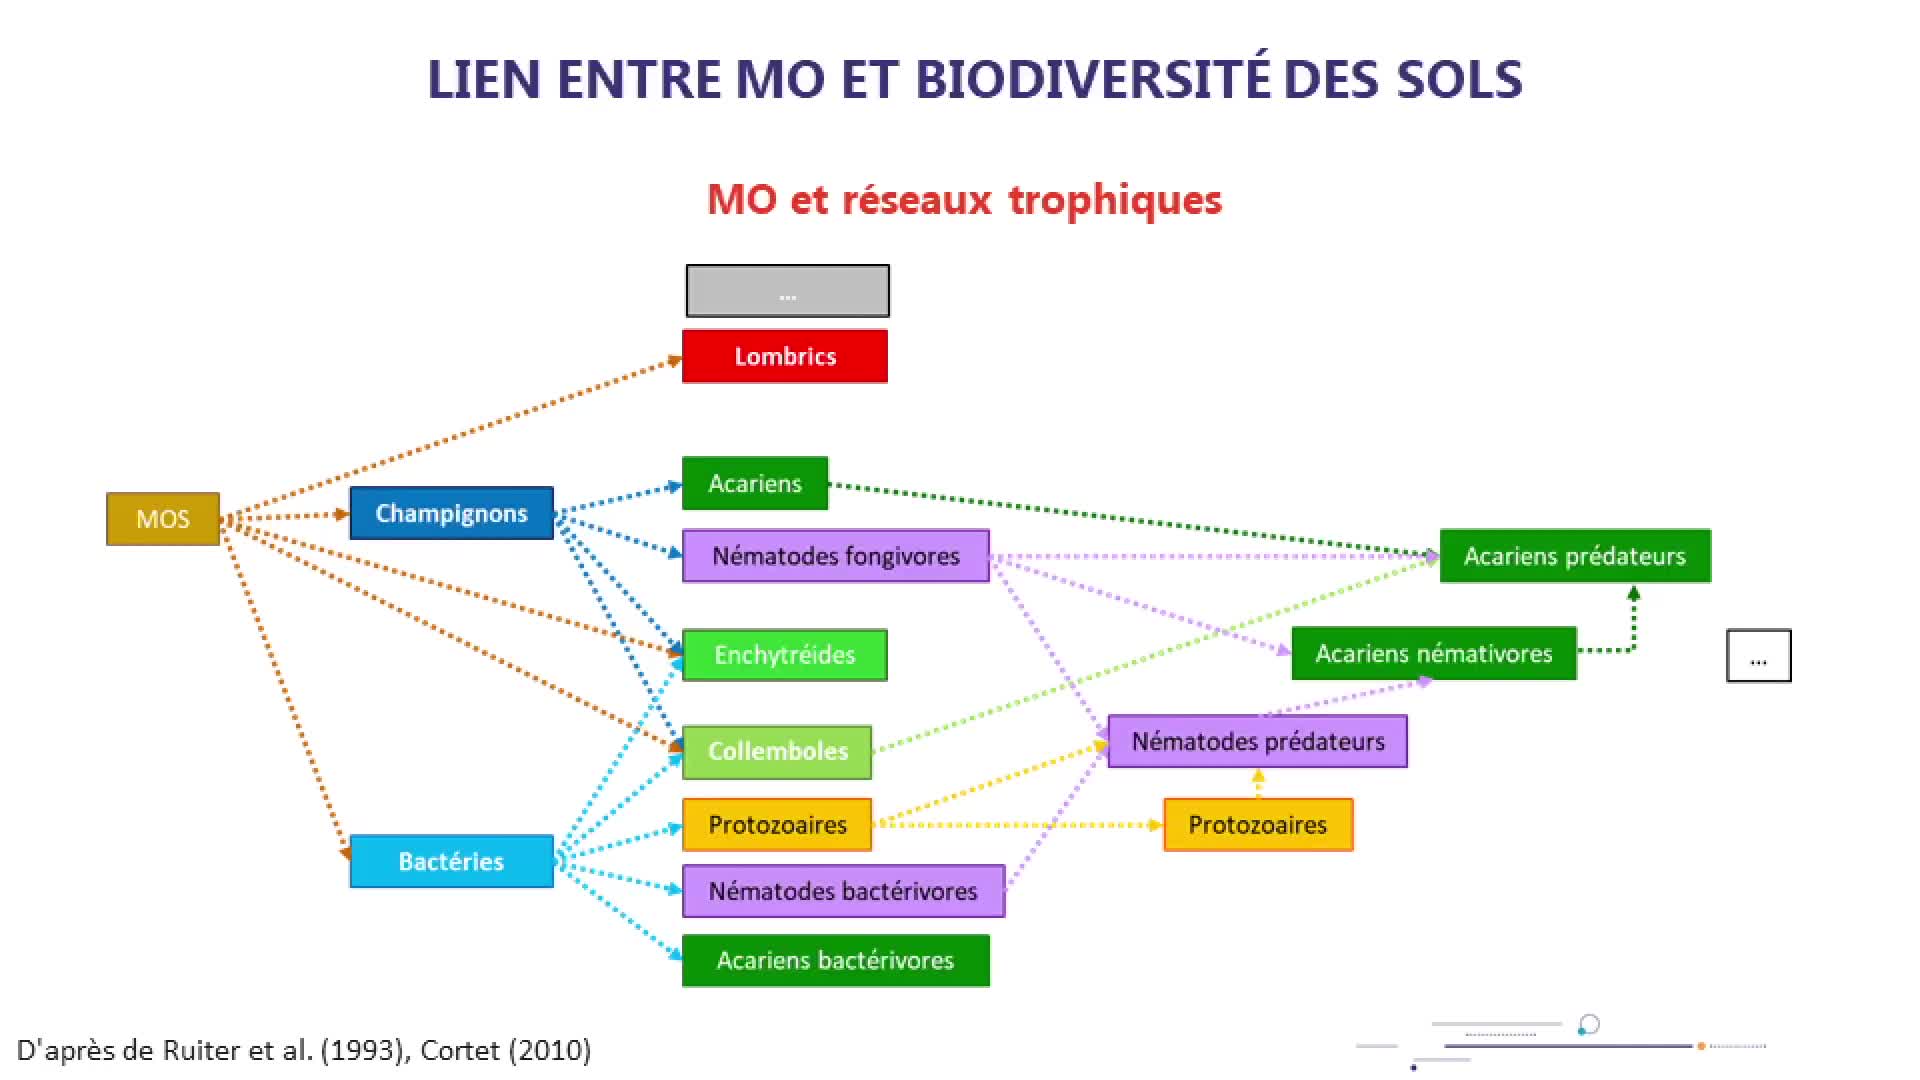 Les matières organiques du sol (MOS), supports de la biodiversité